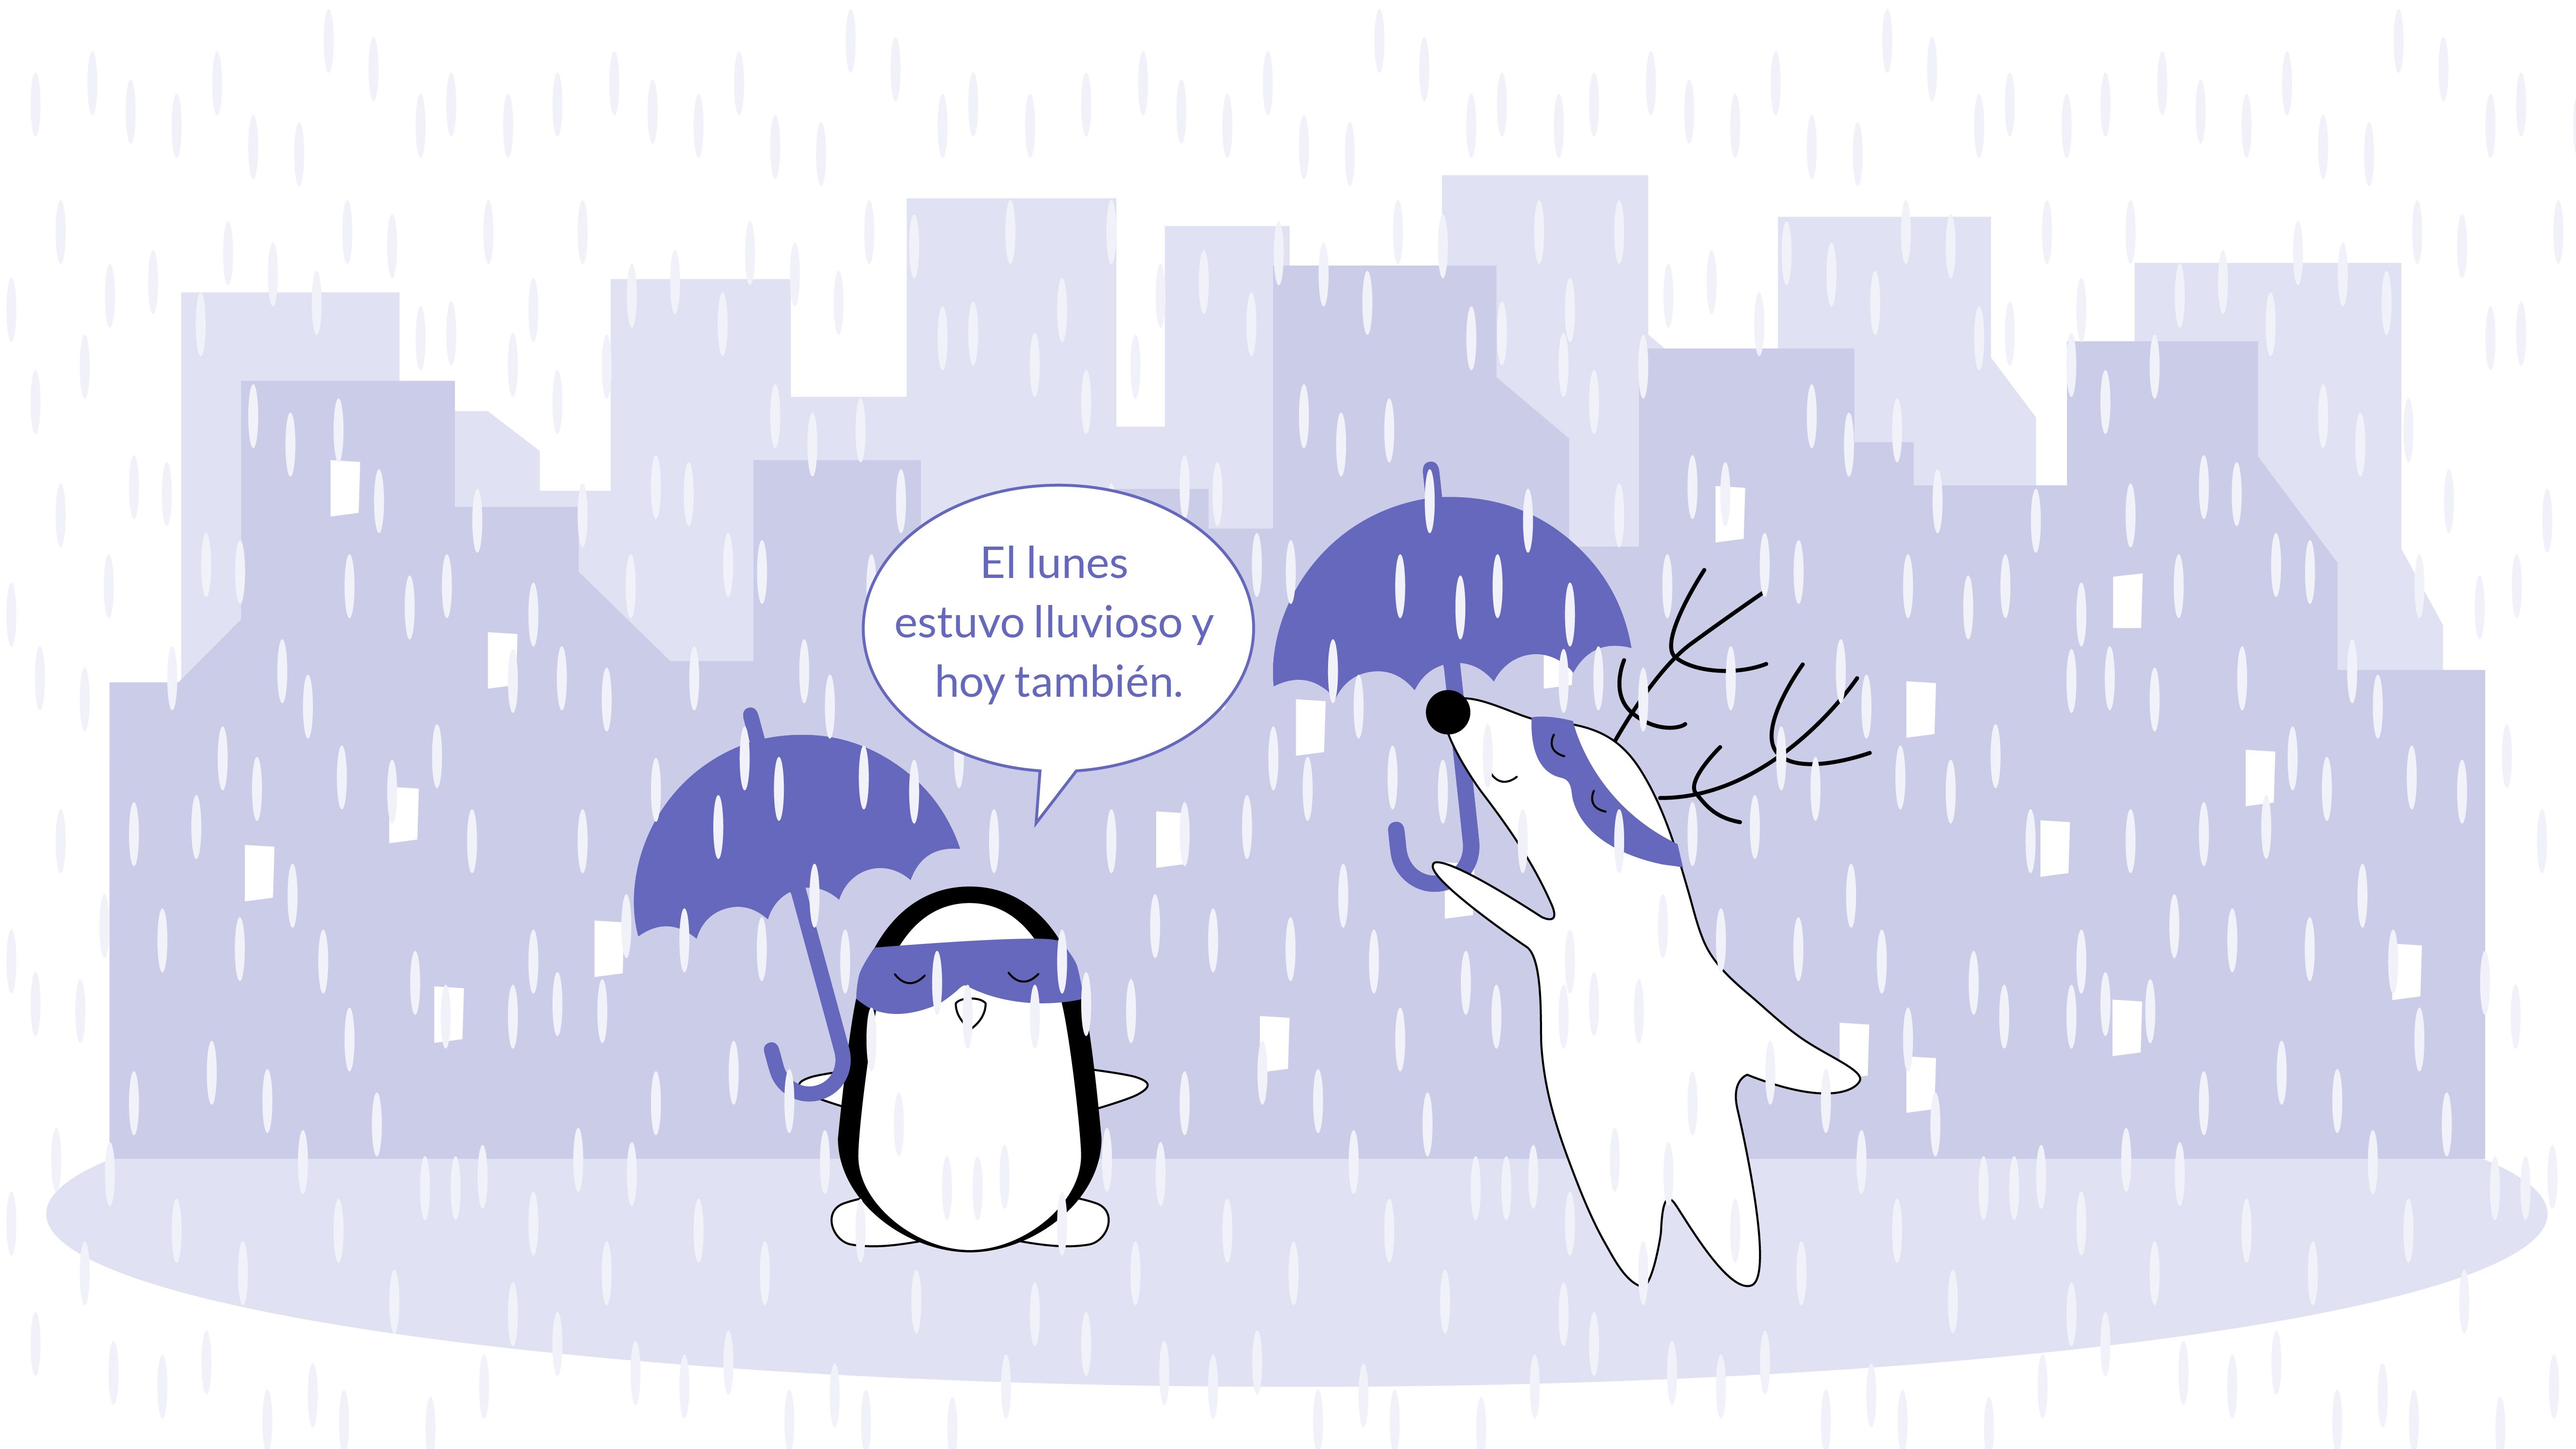 Soren and Pocky standing under the rain, with umbrellas, Soren saying “El lunes estuvo lluvioso y hoy también.”